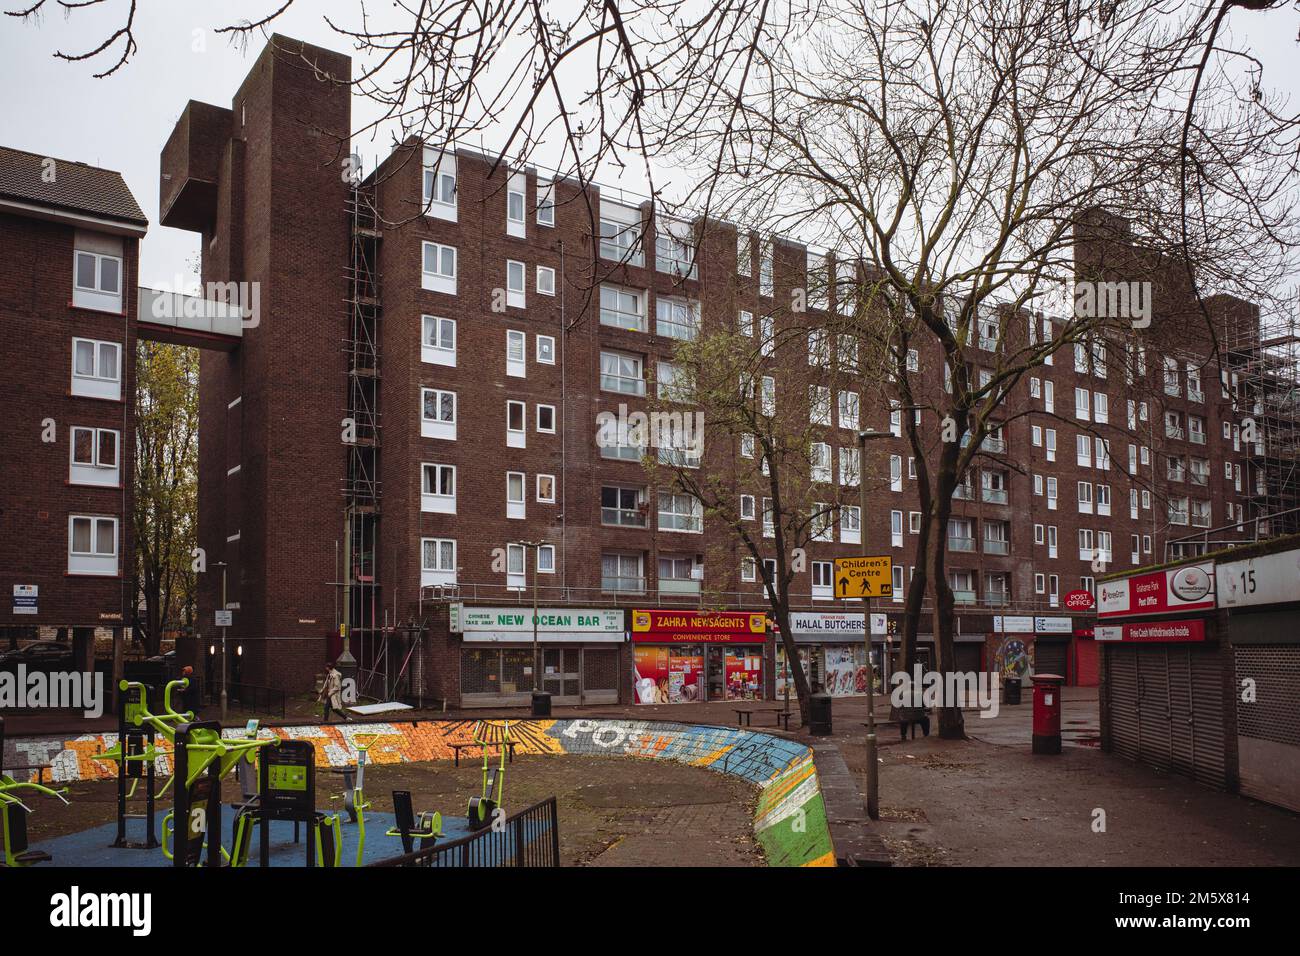 Maison de haute élévation dans le domaine de logement de Grahame Park, au nord-ouest de Londres. Logement social d'après-guerre, architecture, Angleterre, Royaume-Uni. Banque D'Images